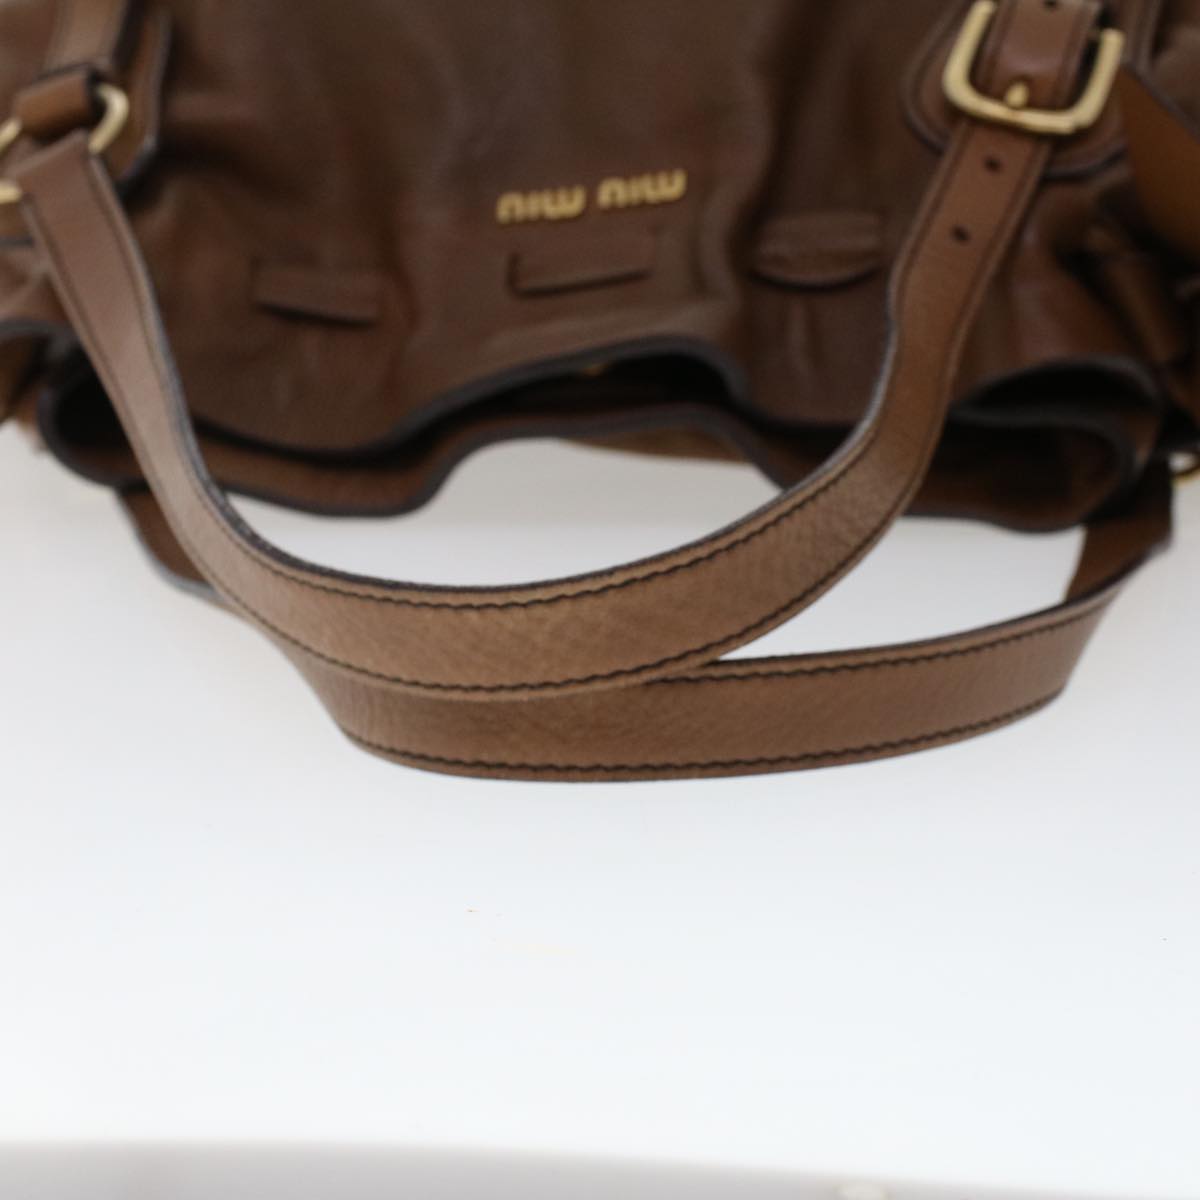 Miu Miu Shoulder Bag Leather Brown Auth ep936